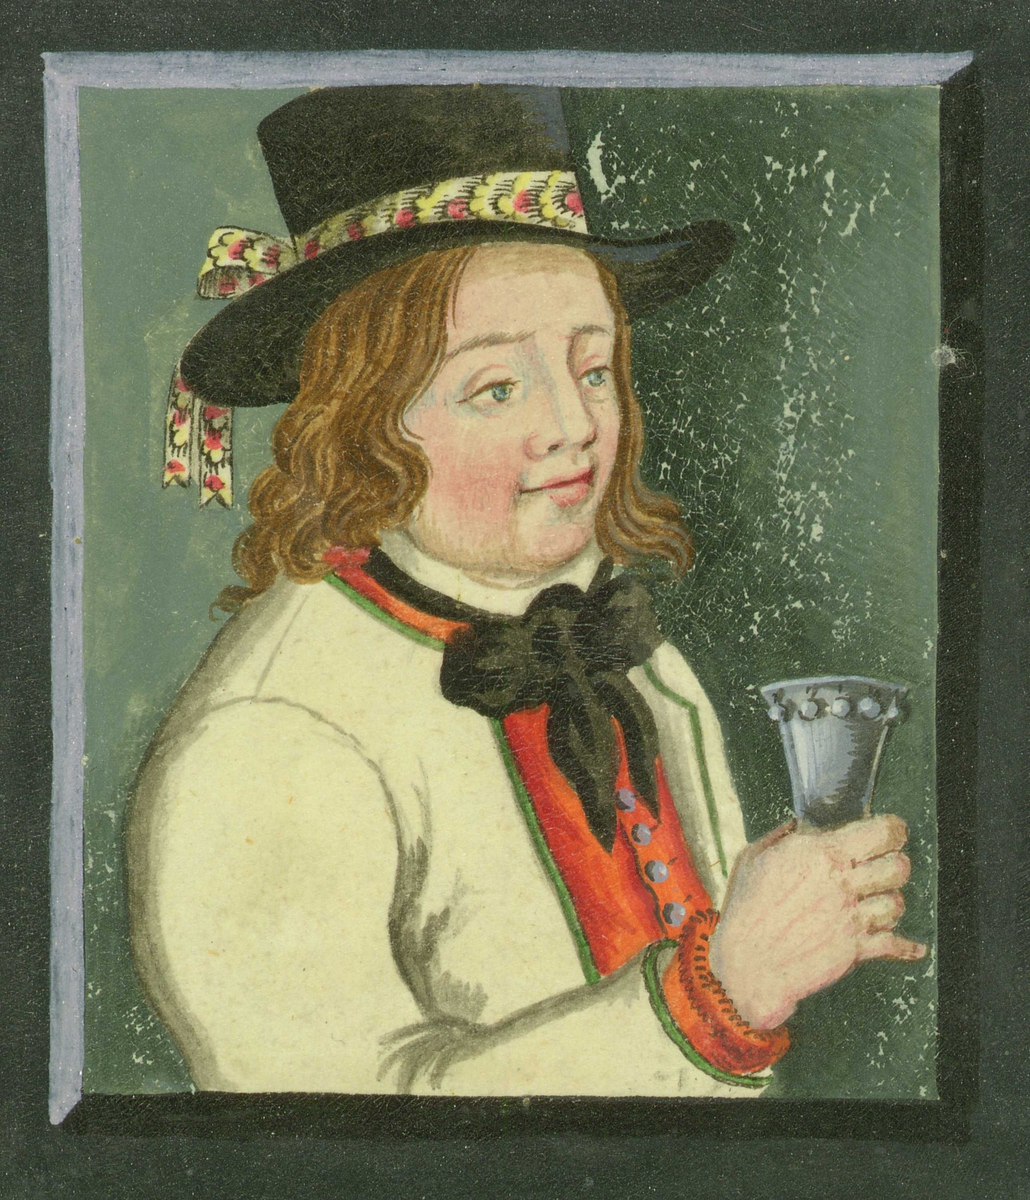 Portrett av brudgom fra Fana, Bergen, Hordaland, med drikkeglass/staup i hånden.